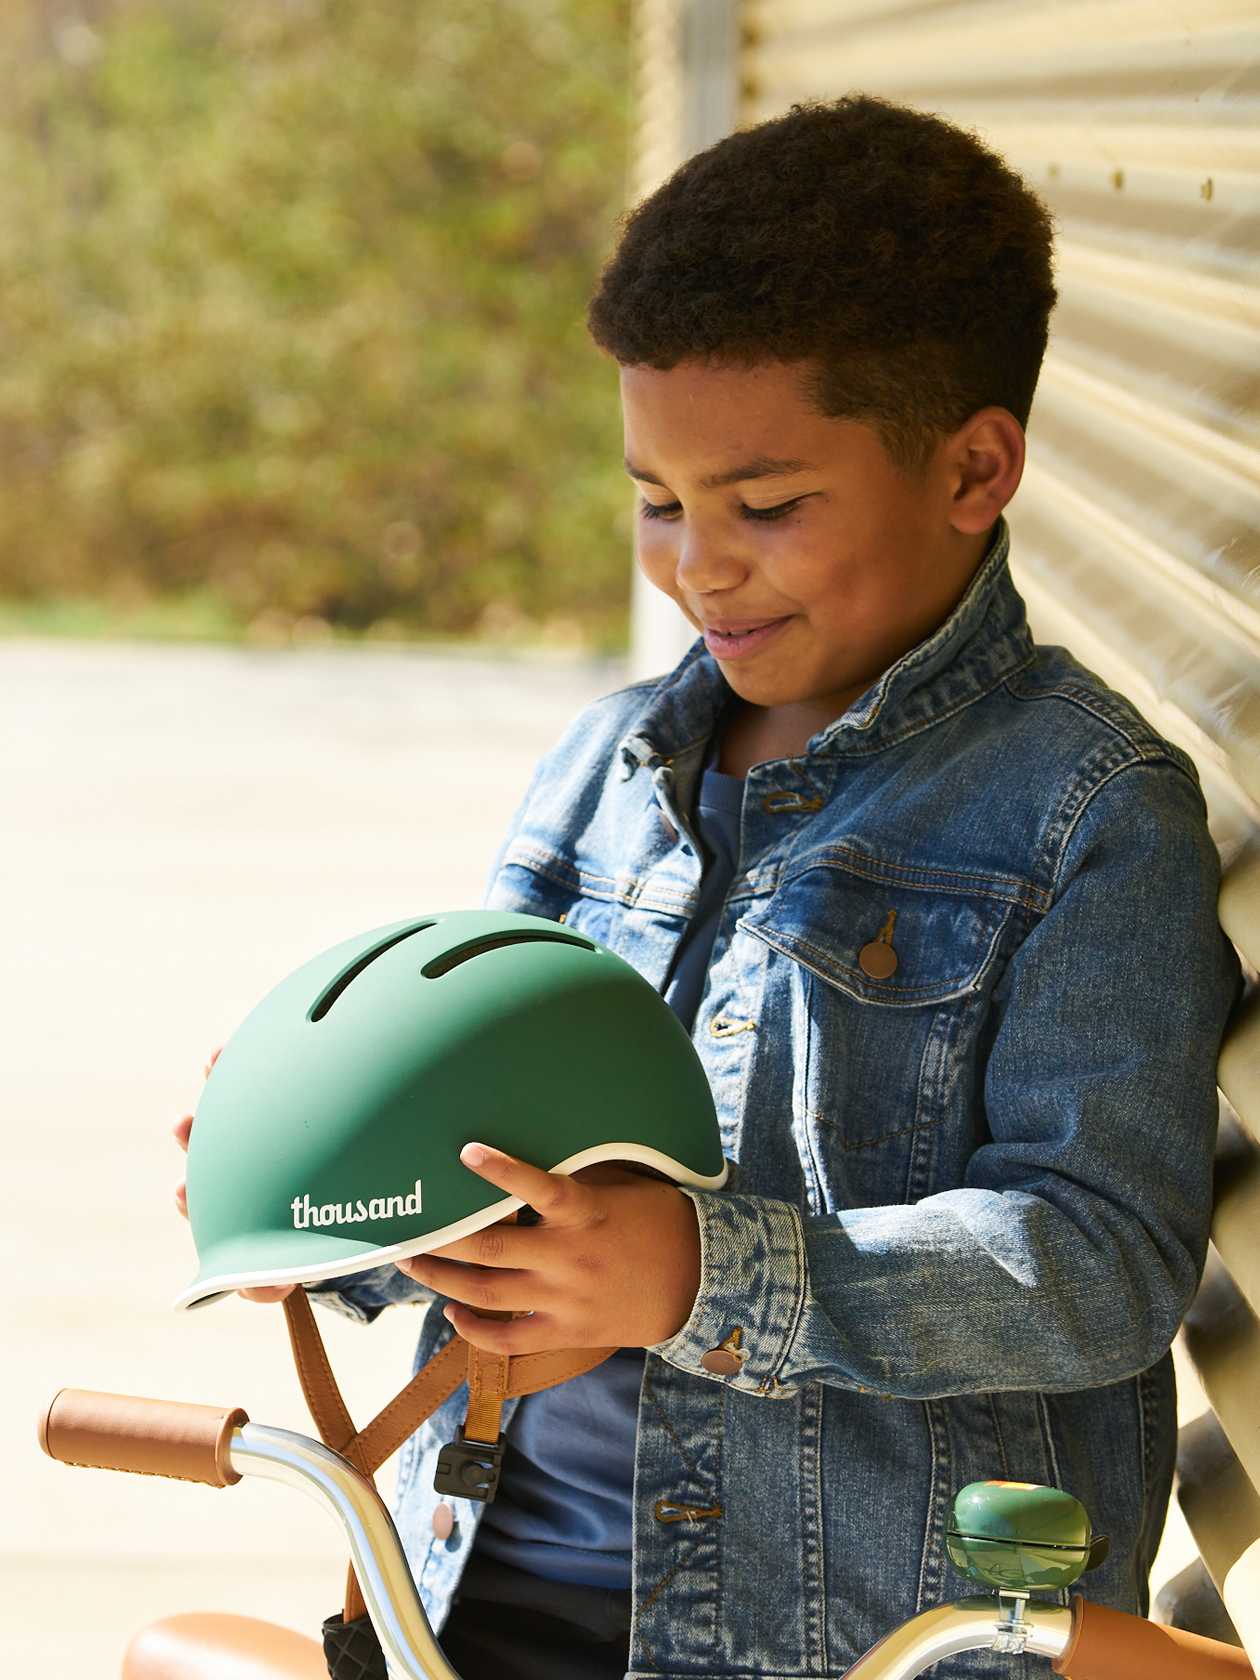 Thousand Jr Kids Helmet, Going Green